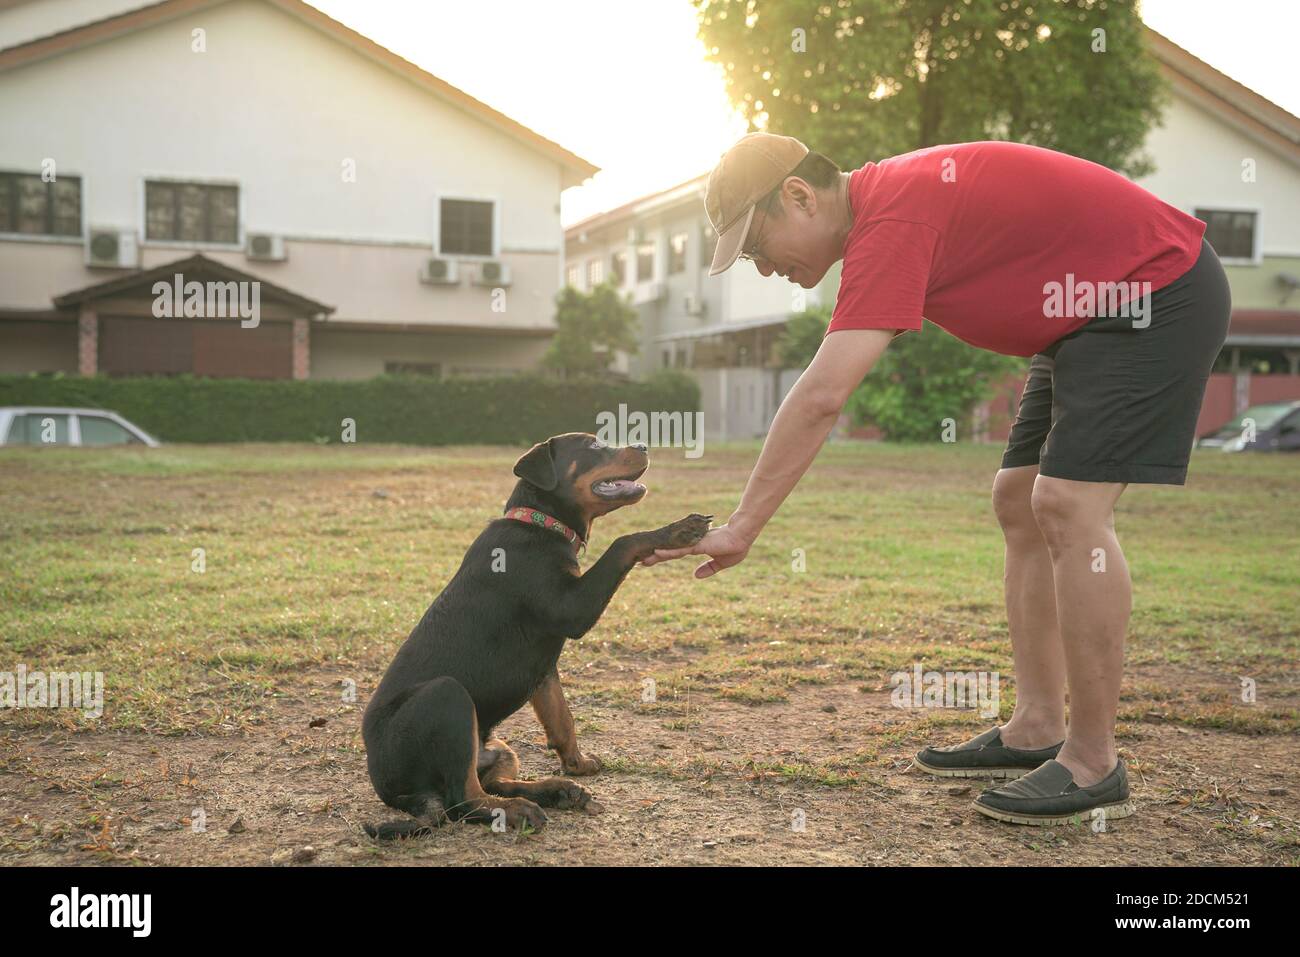 Hundepfote auf der Hand eines erwachsenen Mannes. Lehr Hund auf der Hand schütteln. Freundschafts- und Unterstützungskonzept. Stockfoto